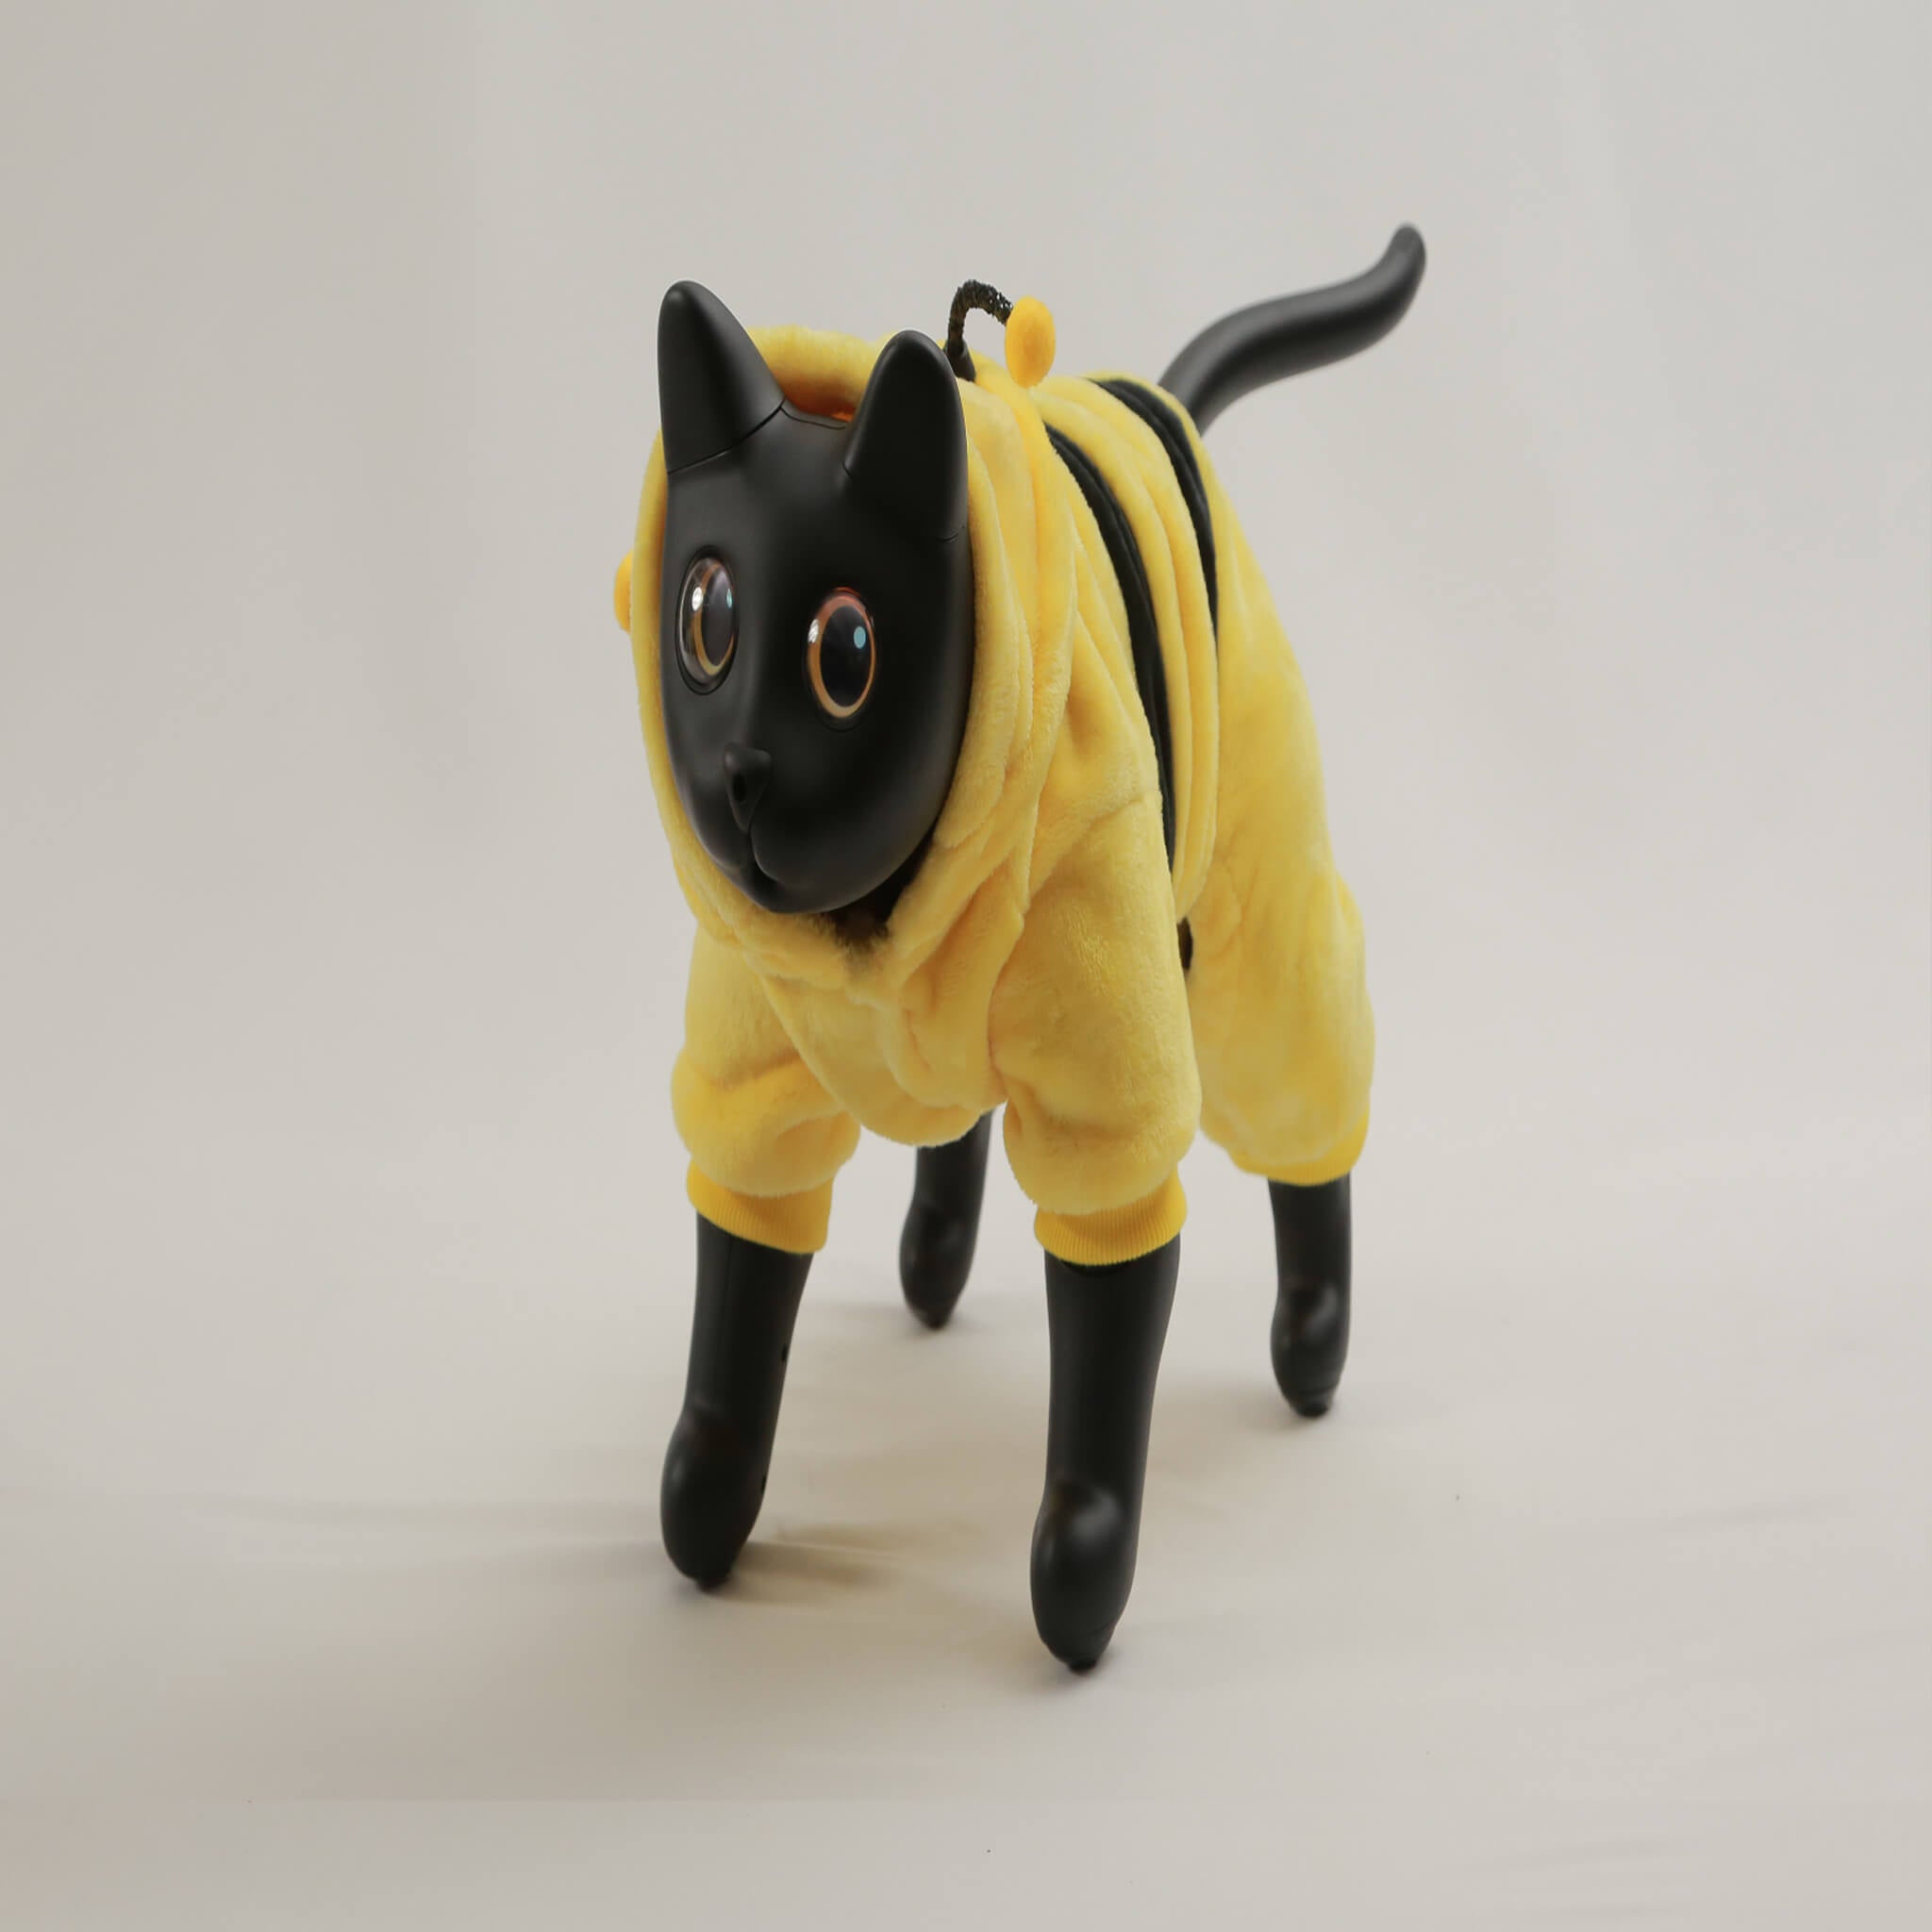 MarsCat: A Bionic Pet Cat, Home Robot Cats